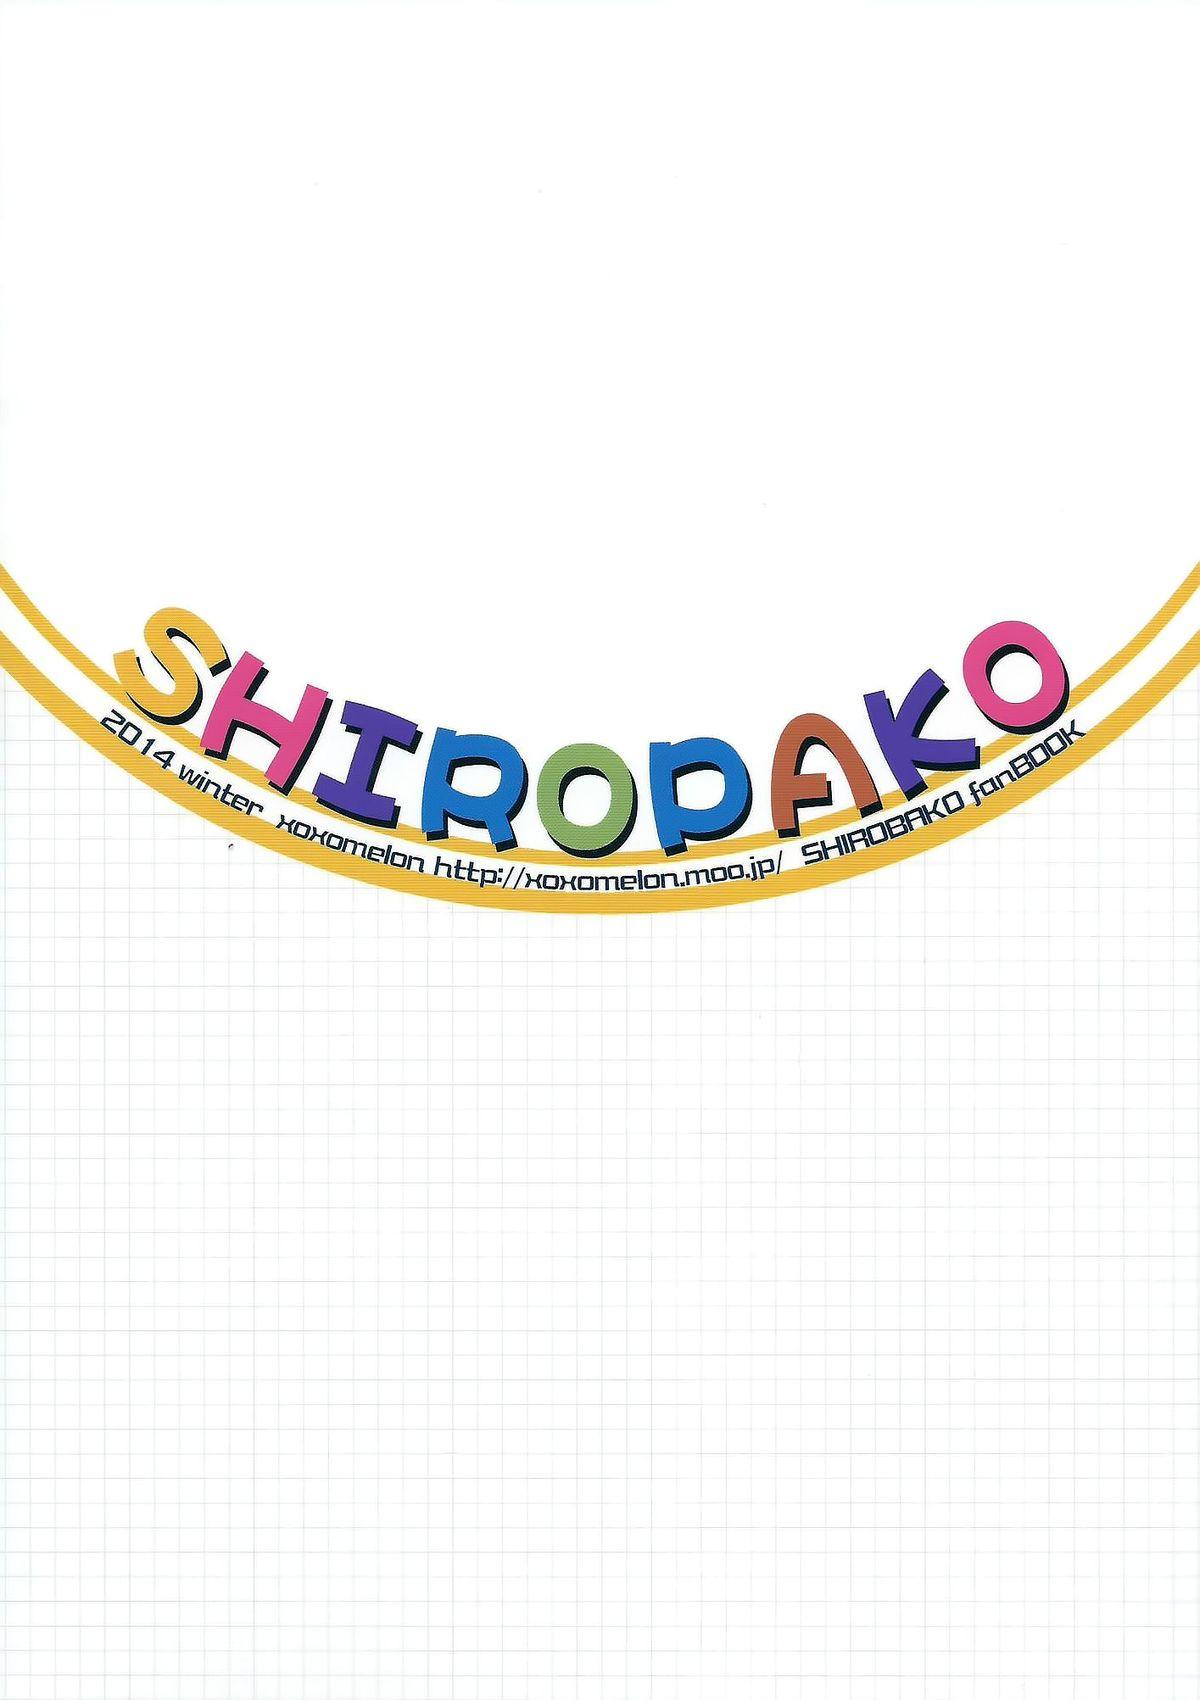 SHIROPAKO 18